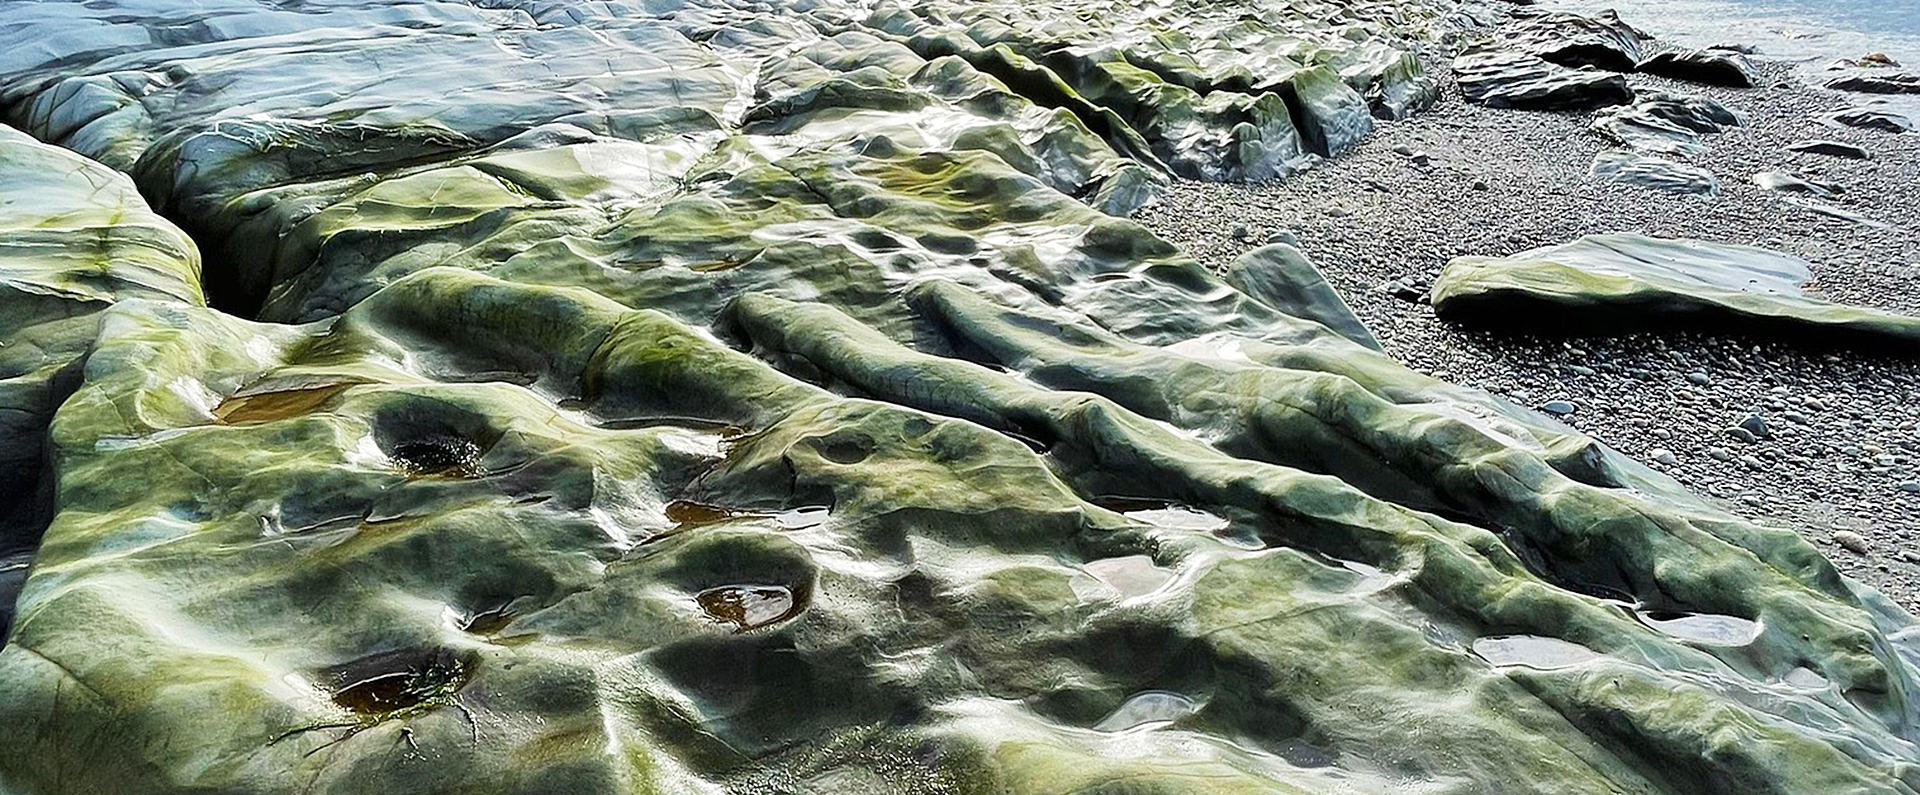 Algae on a beach